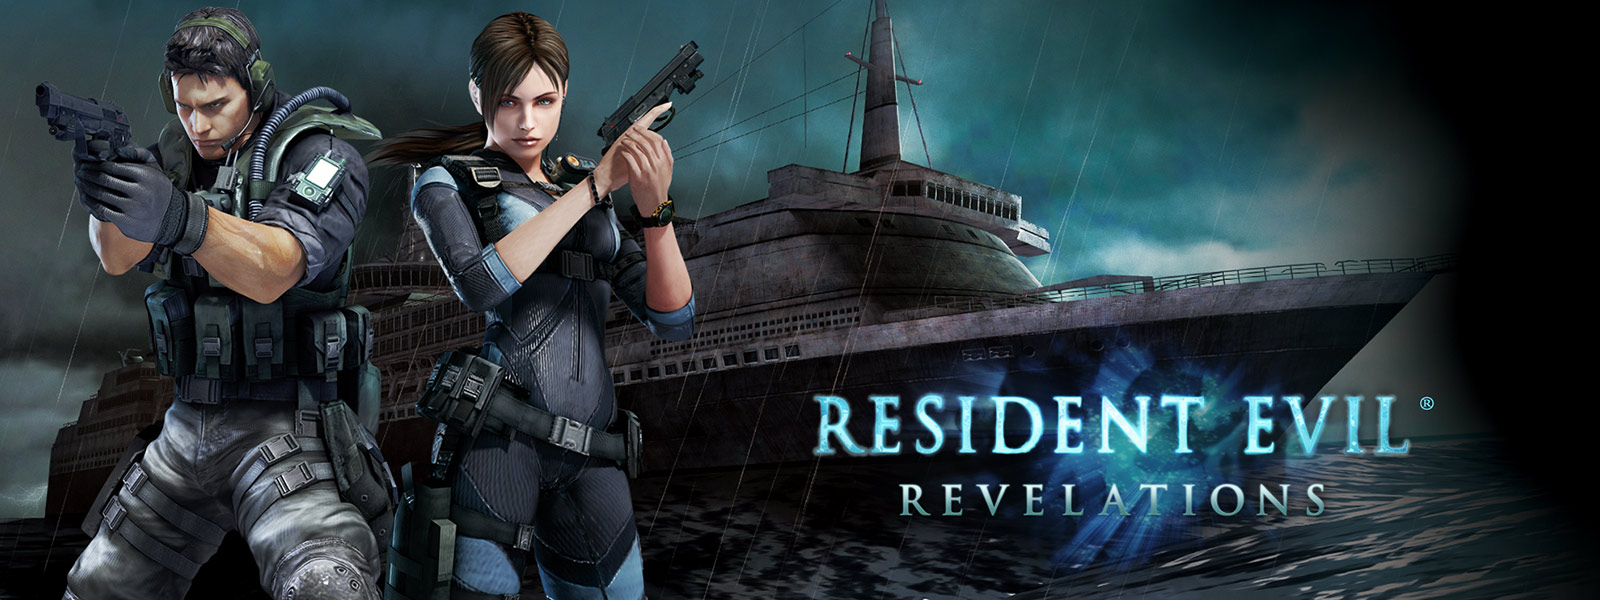 Resident Evil Revelations, dve postavy držiace pištole pred strašidelne vyzerajúcou výletnou loďou